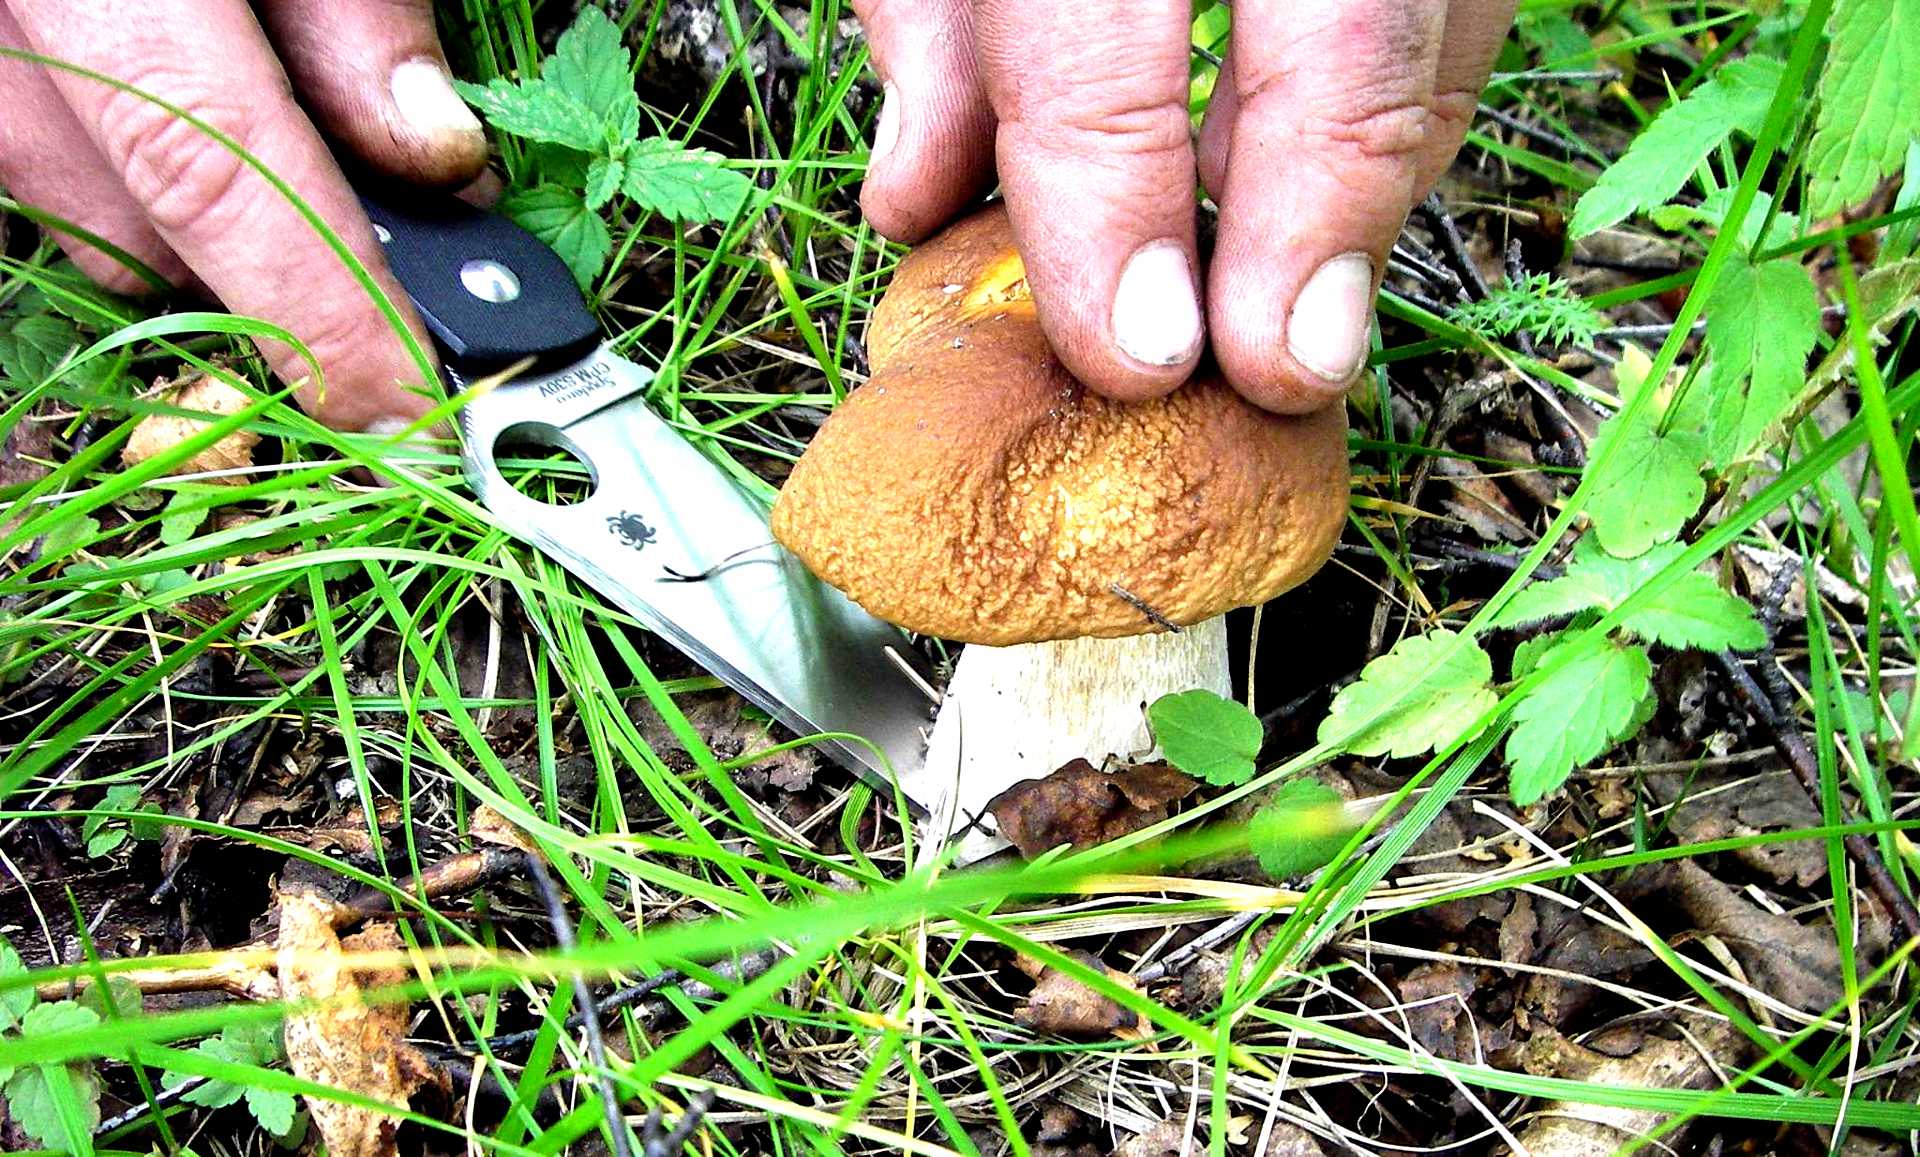 Picking mushrooms. Срезает гриб. Грибник срезает гриб. Сбор грибов. Срезать грибы ножом.